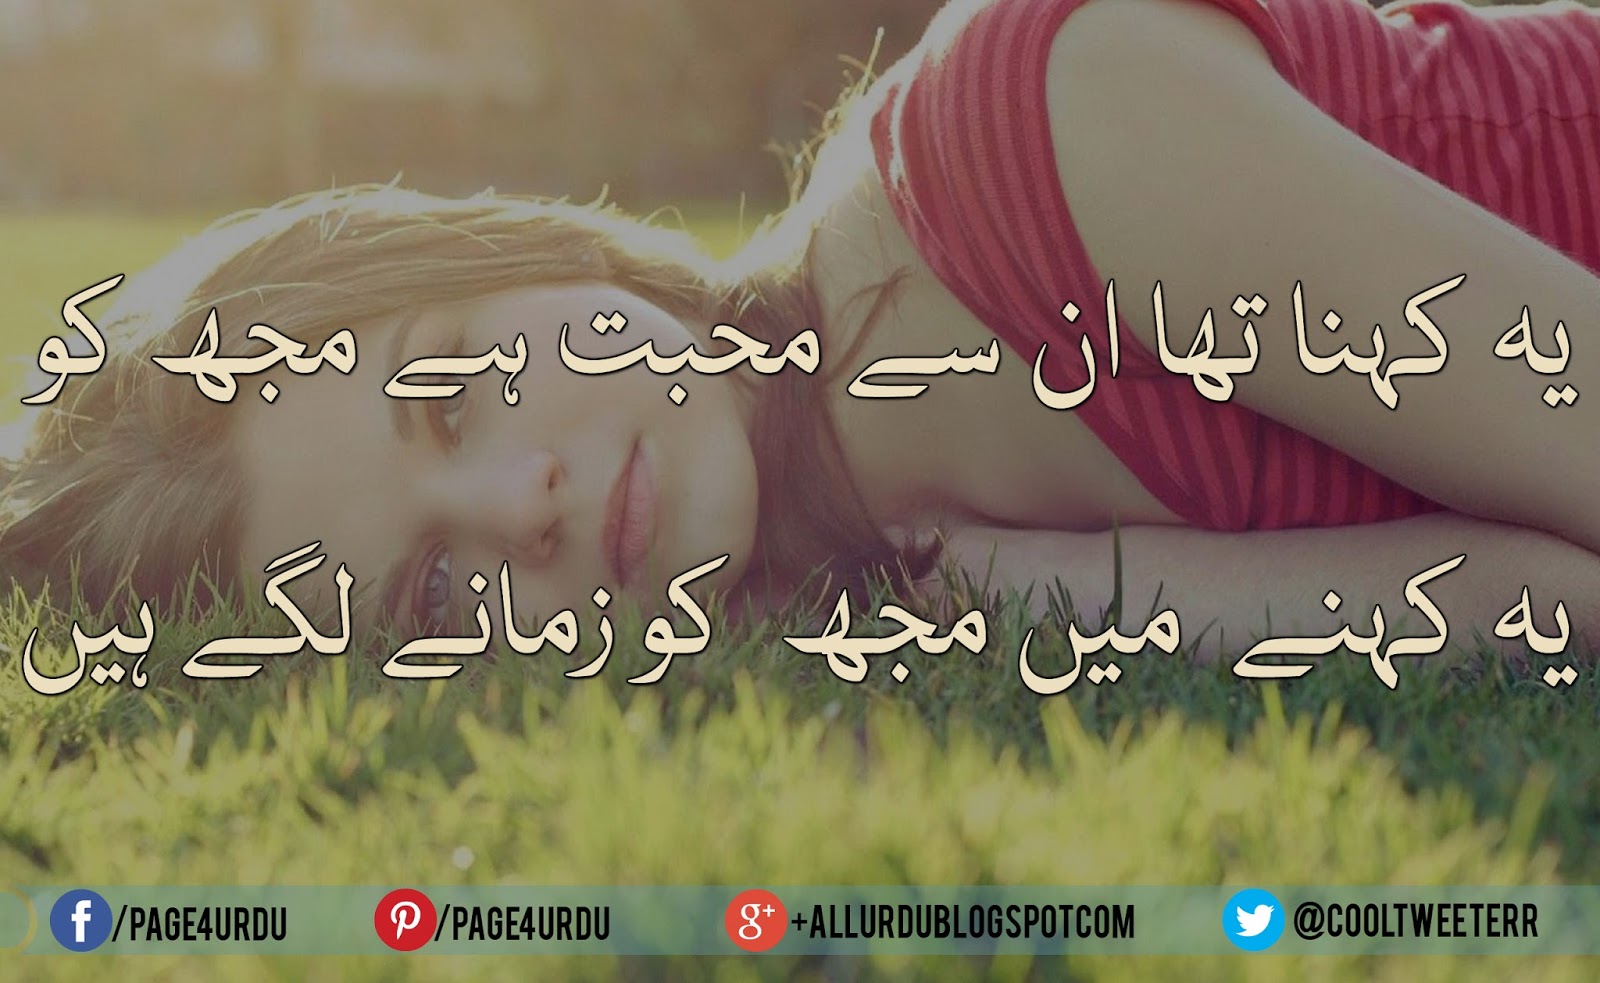 best urdu sad poetry images